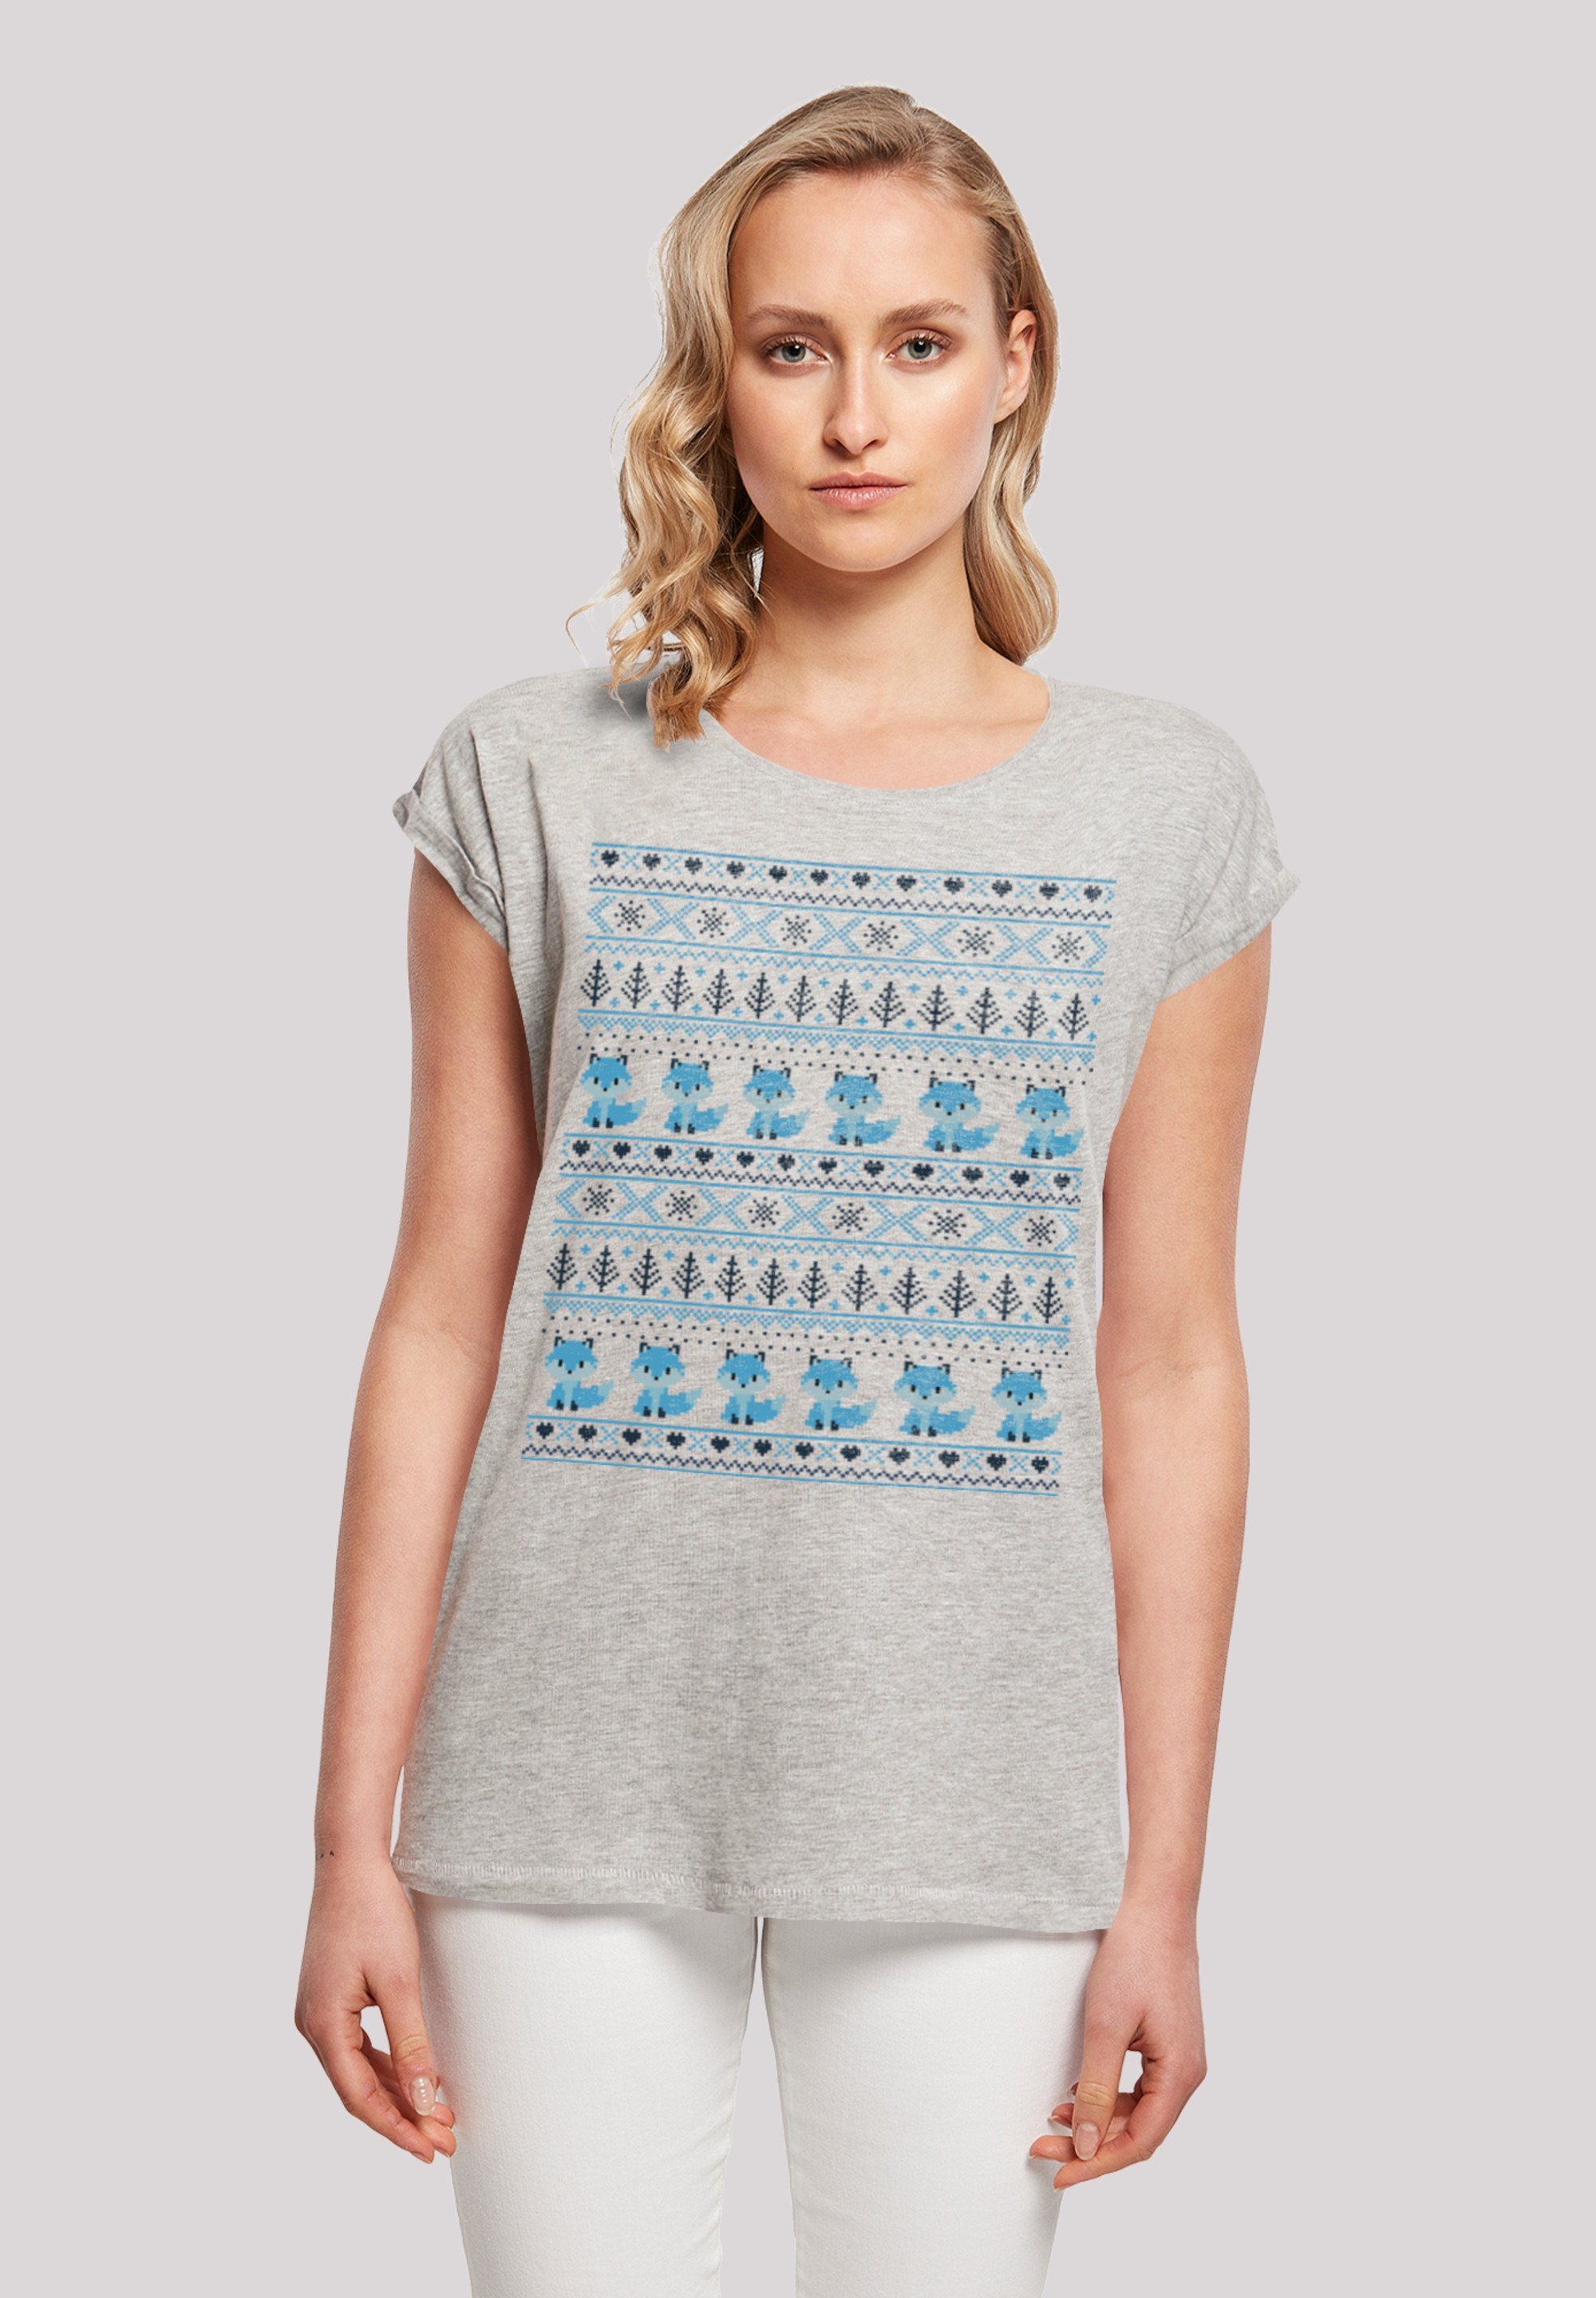 F4NT4STIC T-Shirt Christmas Fuchs Weihnachten Muster Print, Sehr weicher  Baumwollstoff mit hohem Tragekomfort